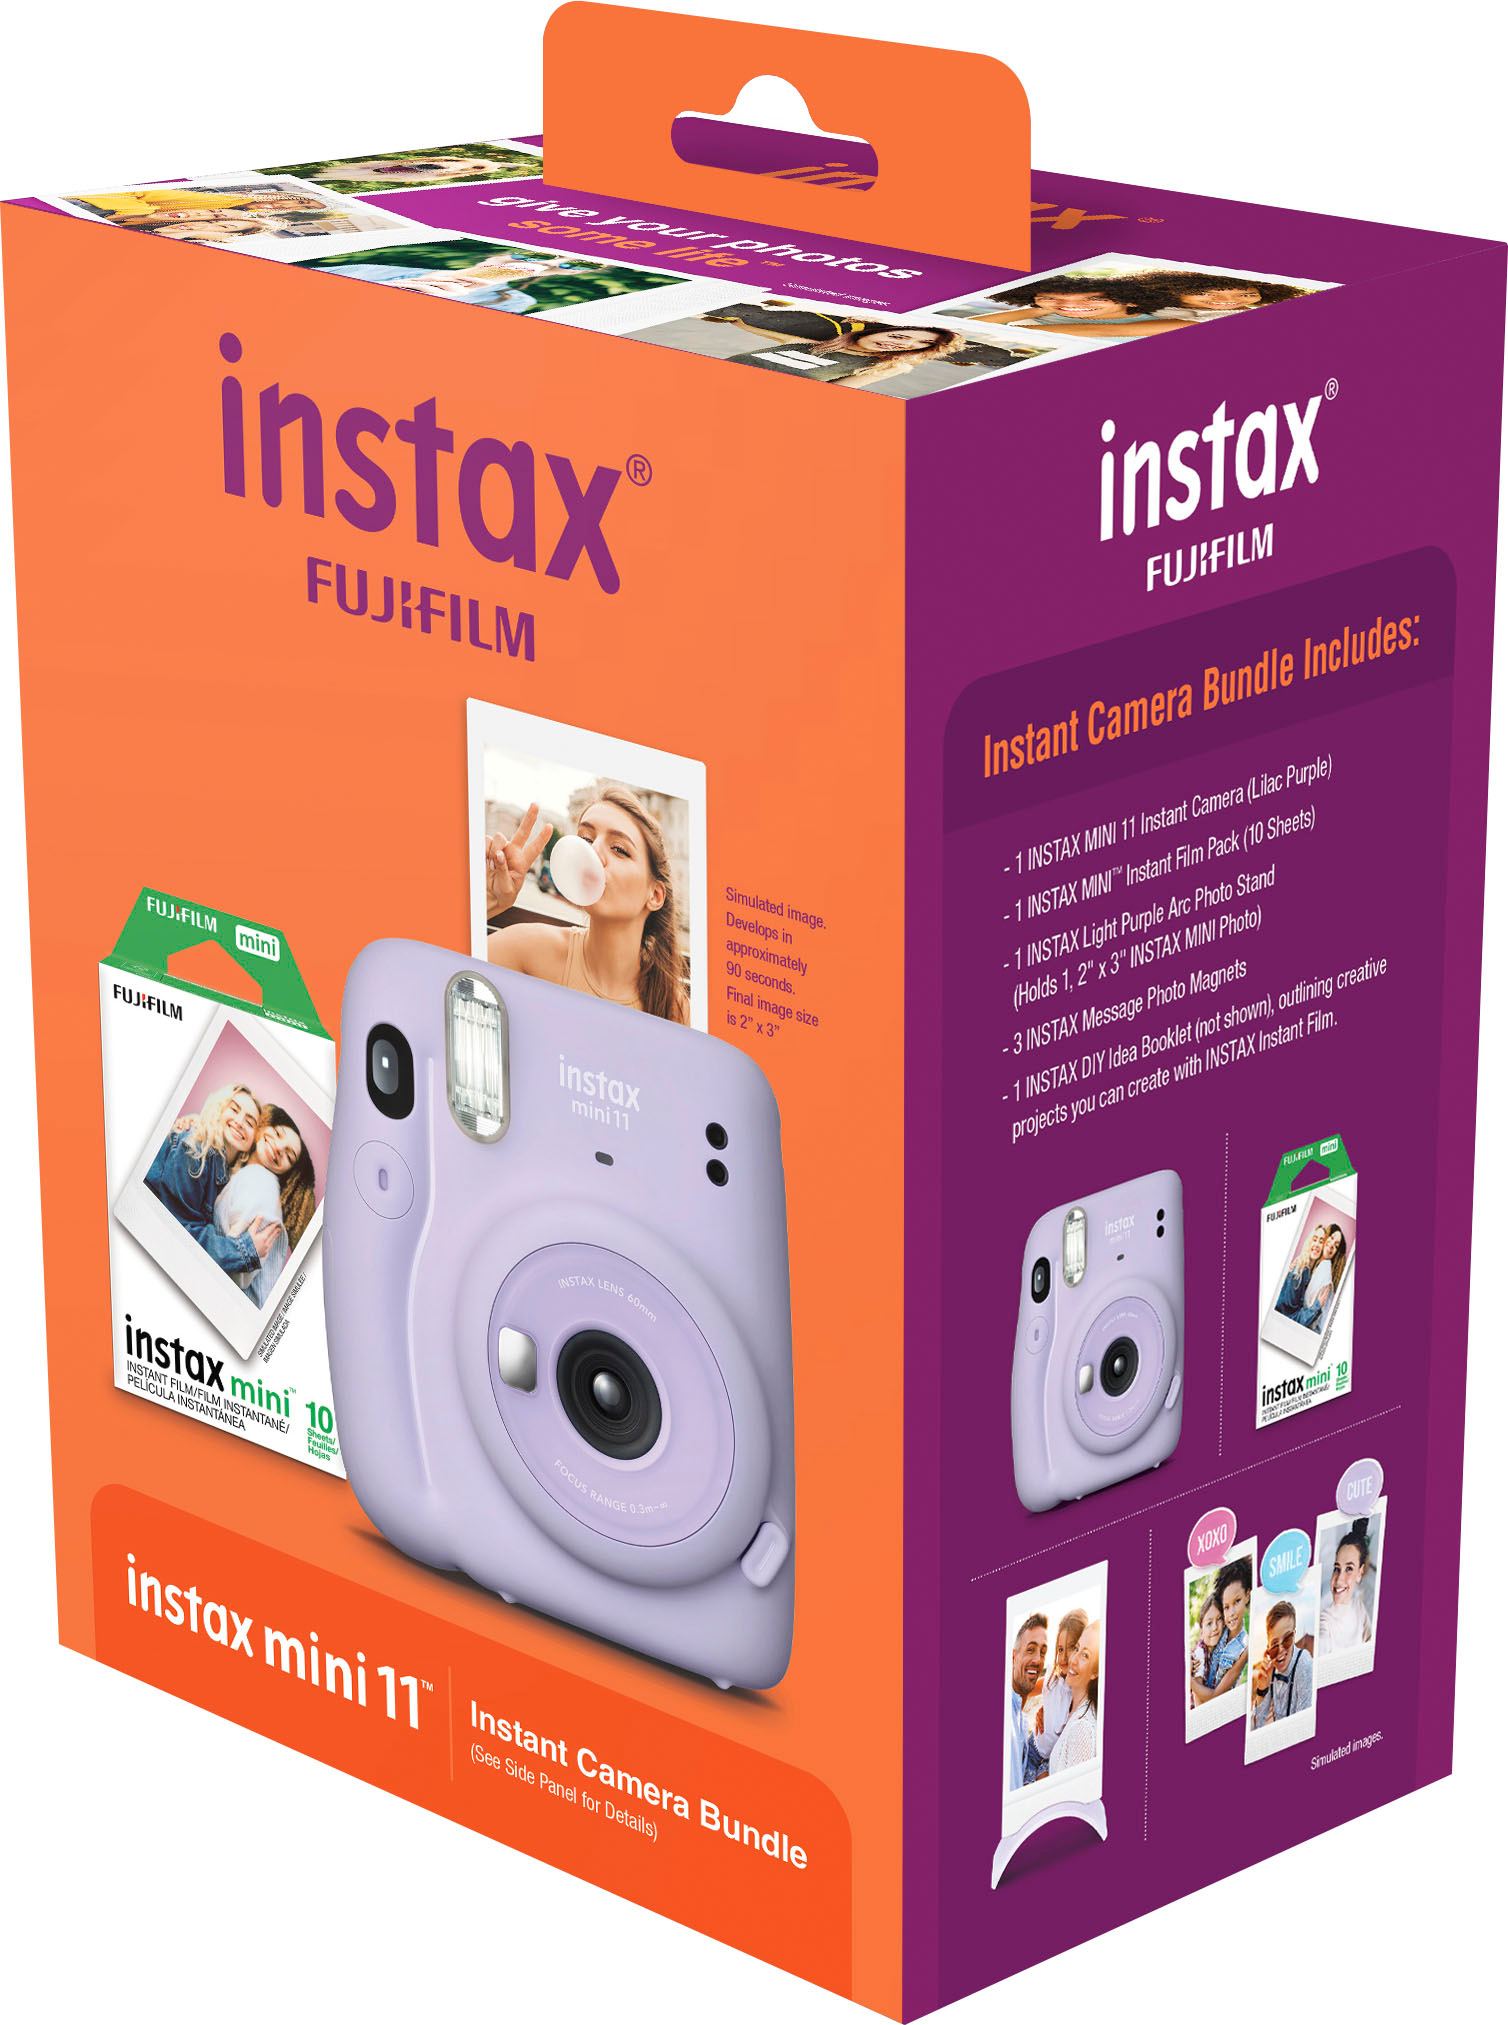 FUJIFILM Instax Mini 11 Instax Mini 11 Purple with Film 10x2